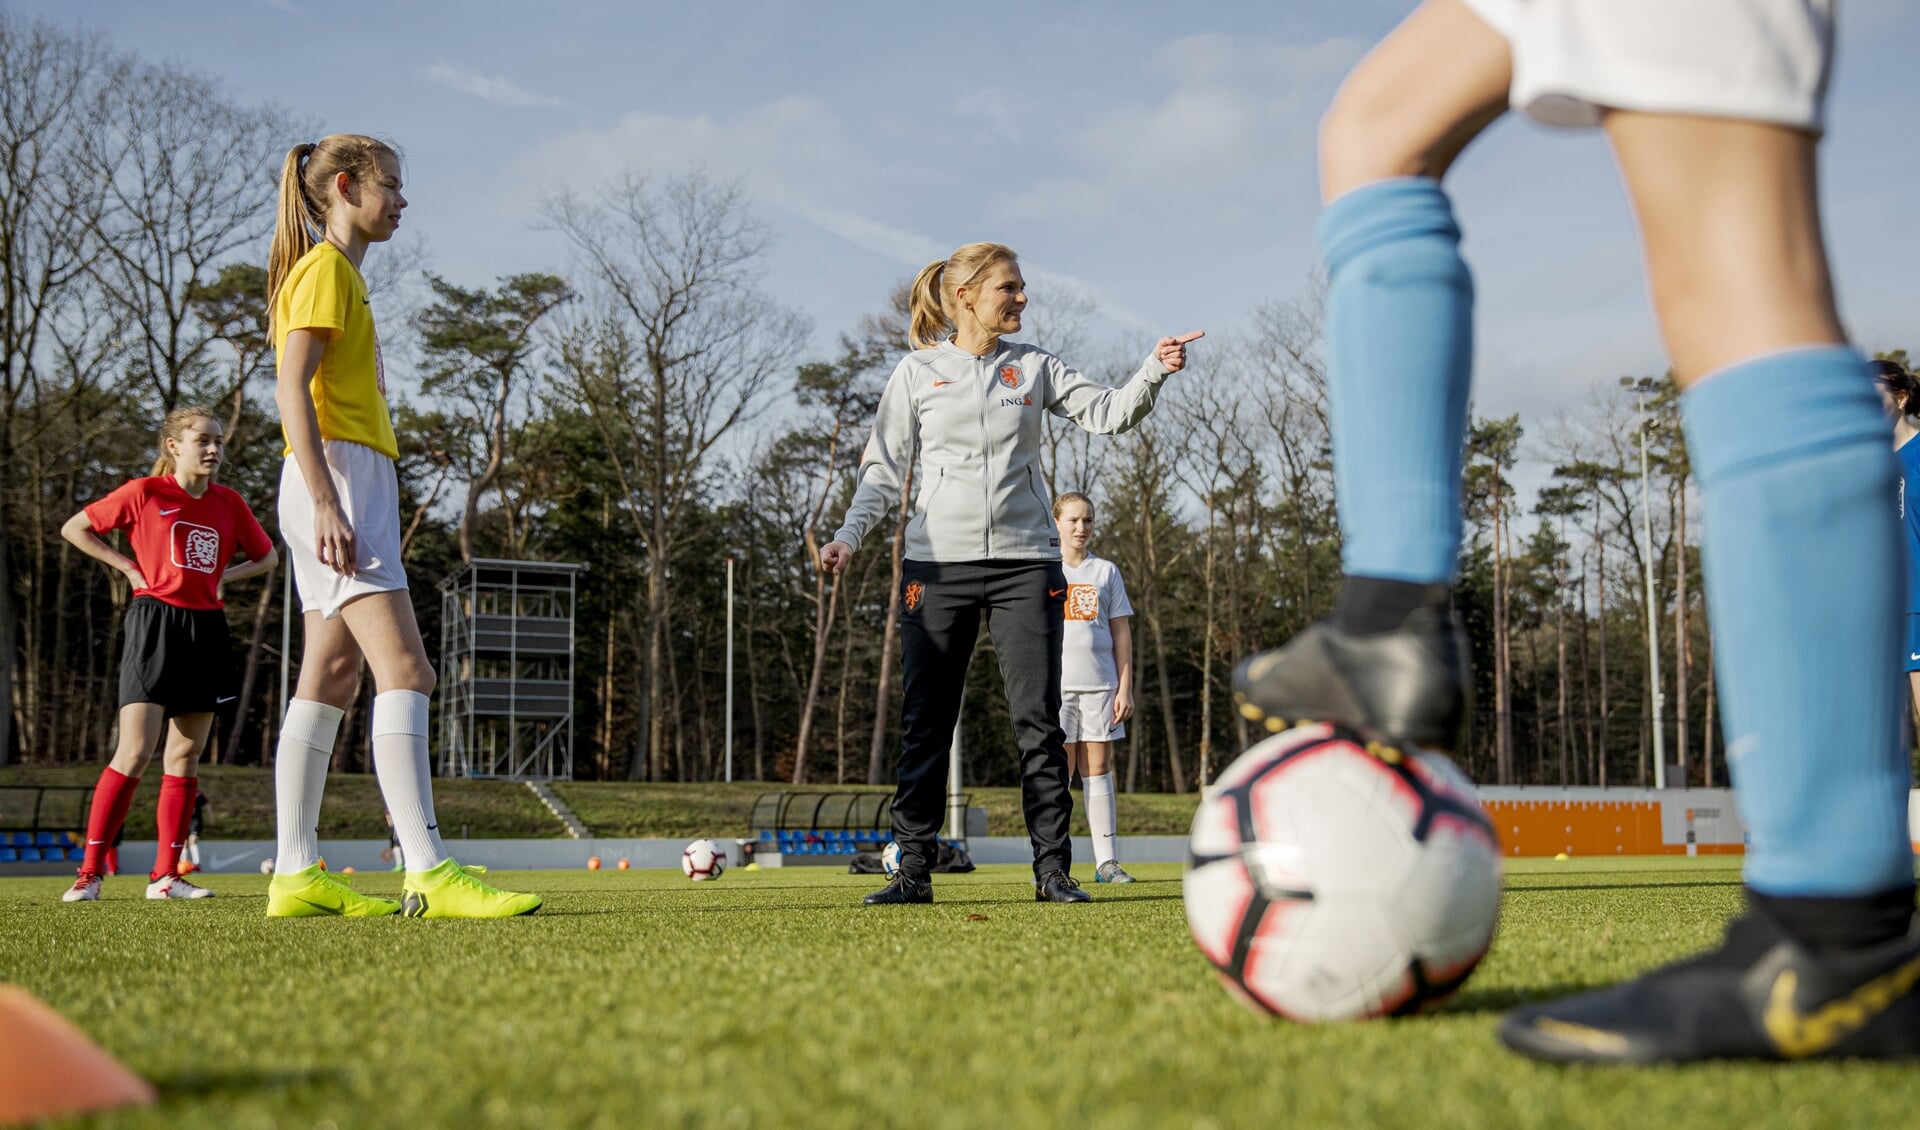 Bondscoach Wiegman is hét gezicht van het Nederlandse vrouwenvoetbal